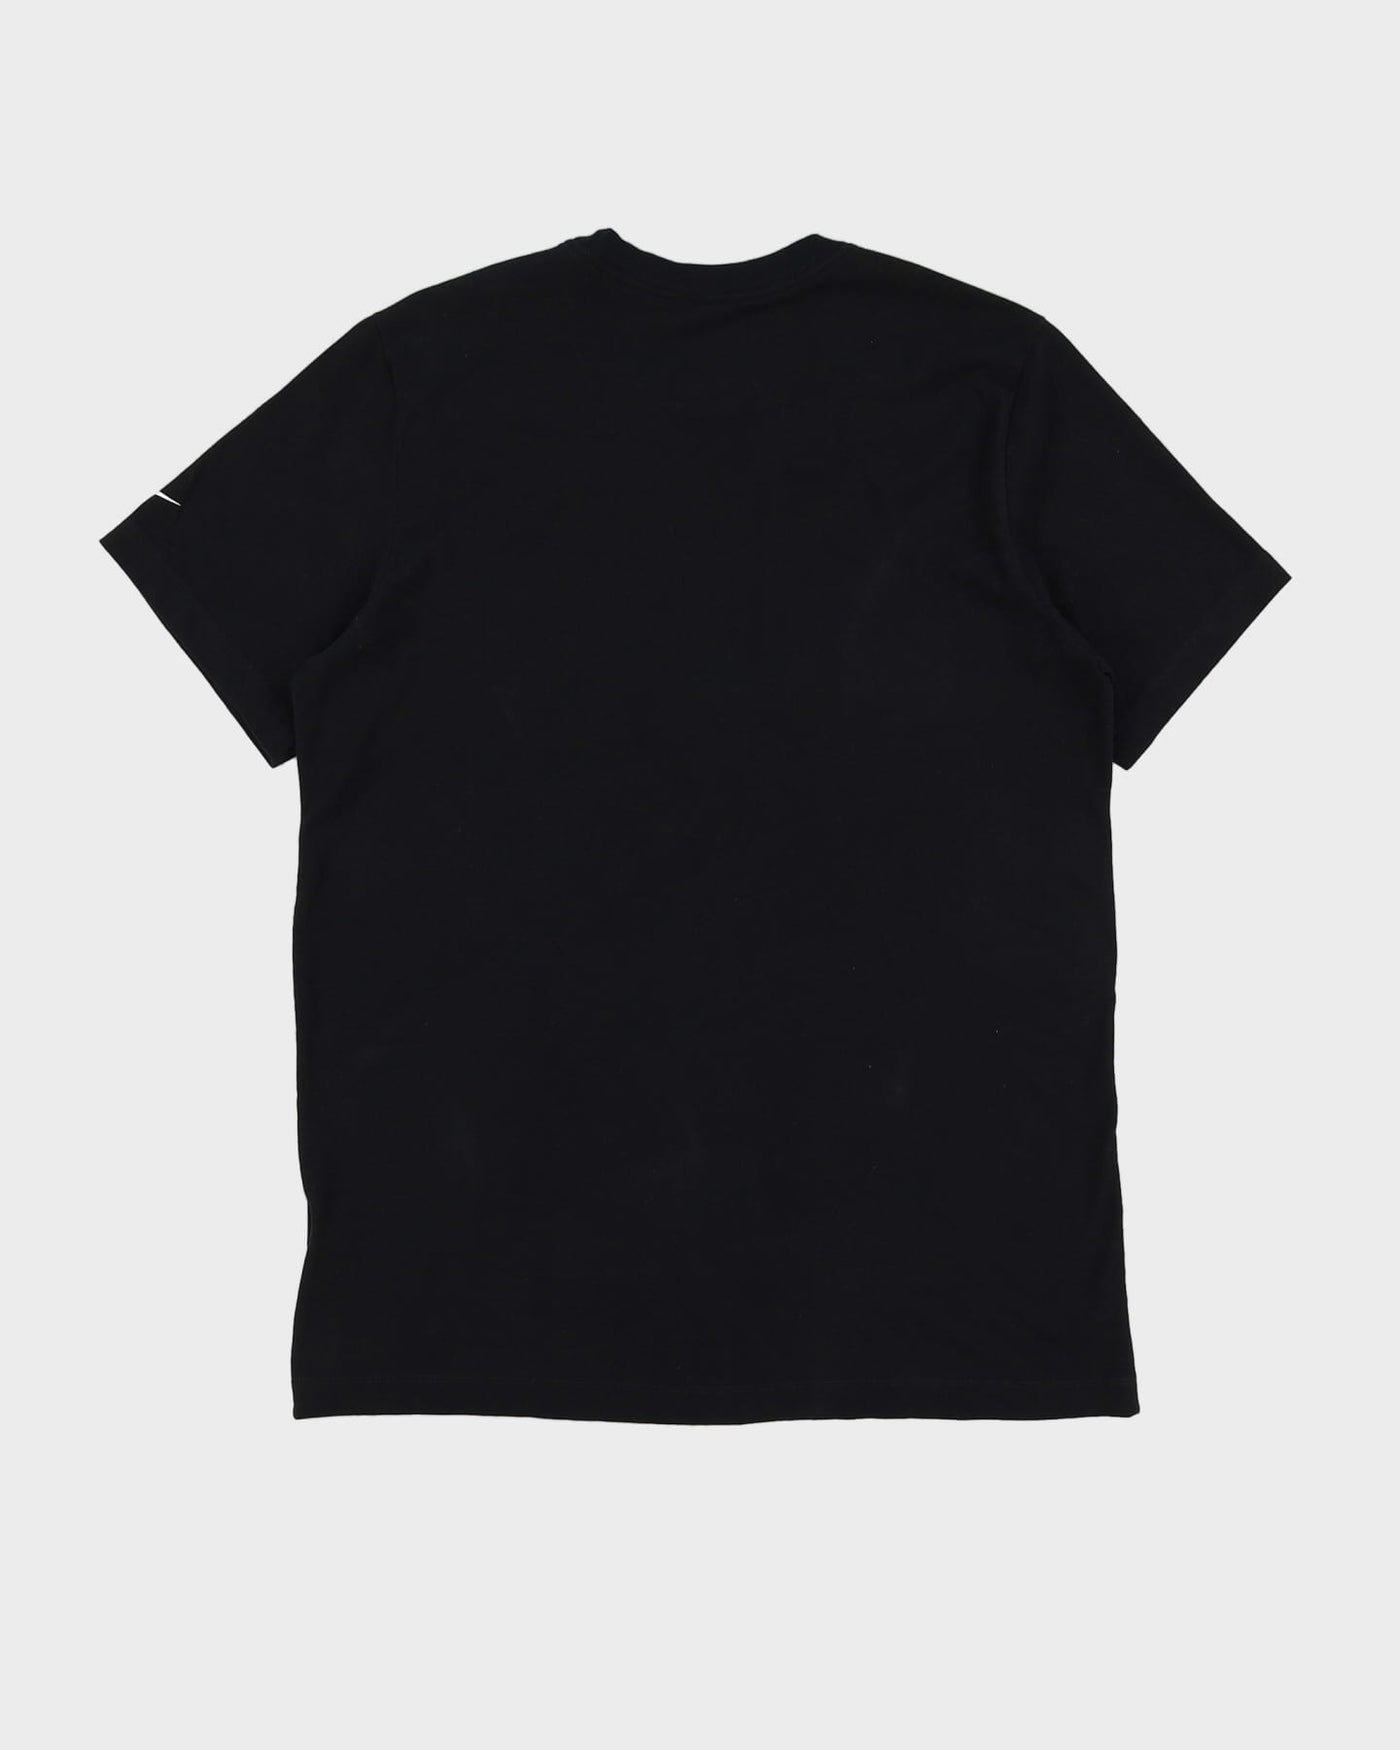 Nike WNBA Logo Black T-Shirt - L